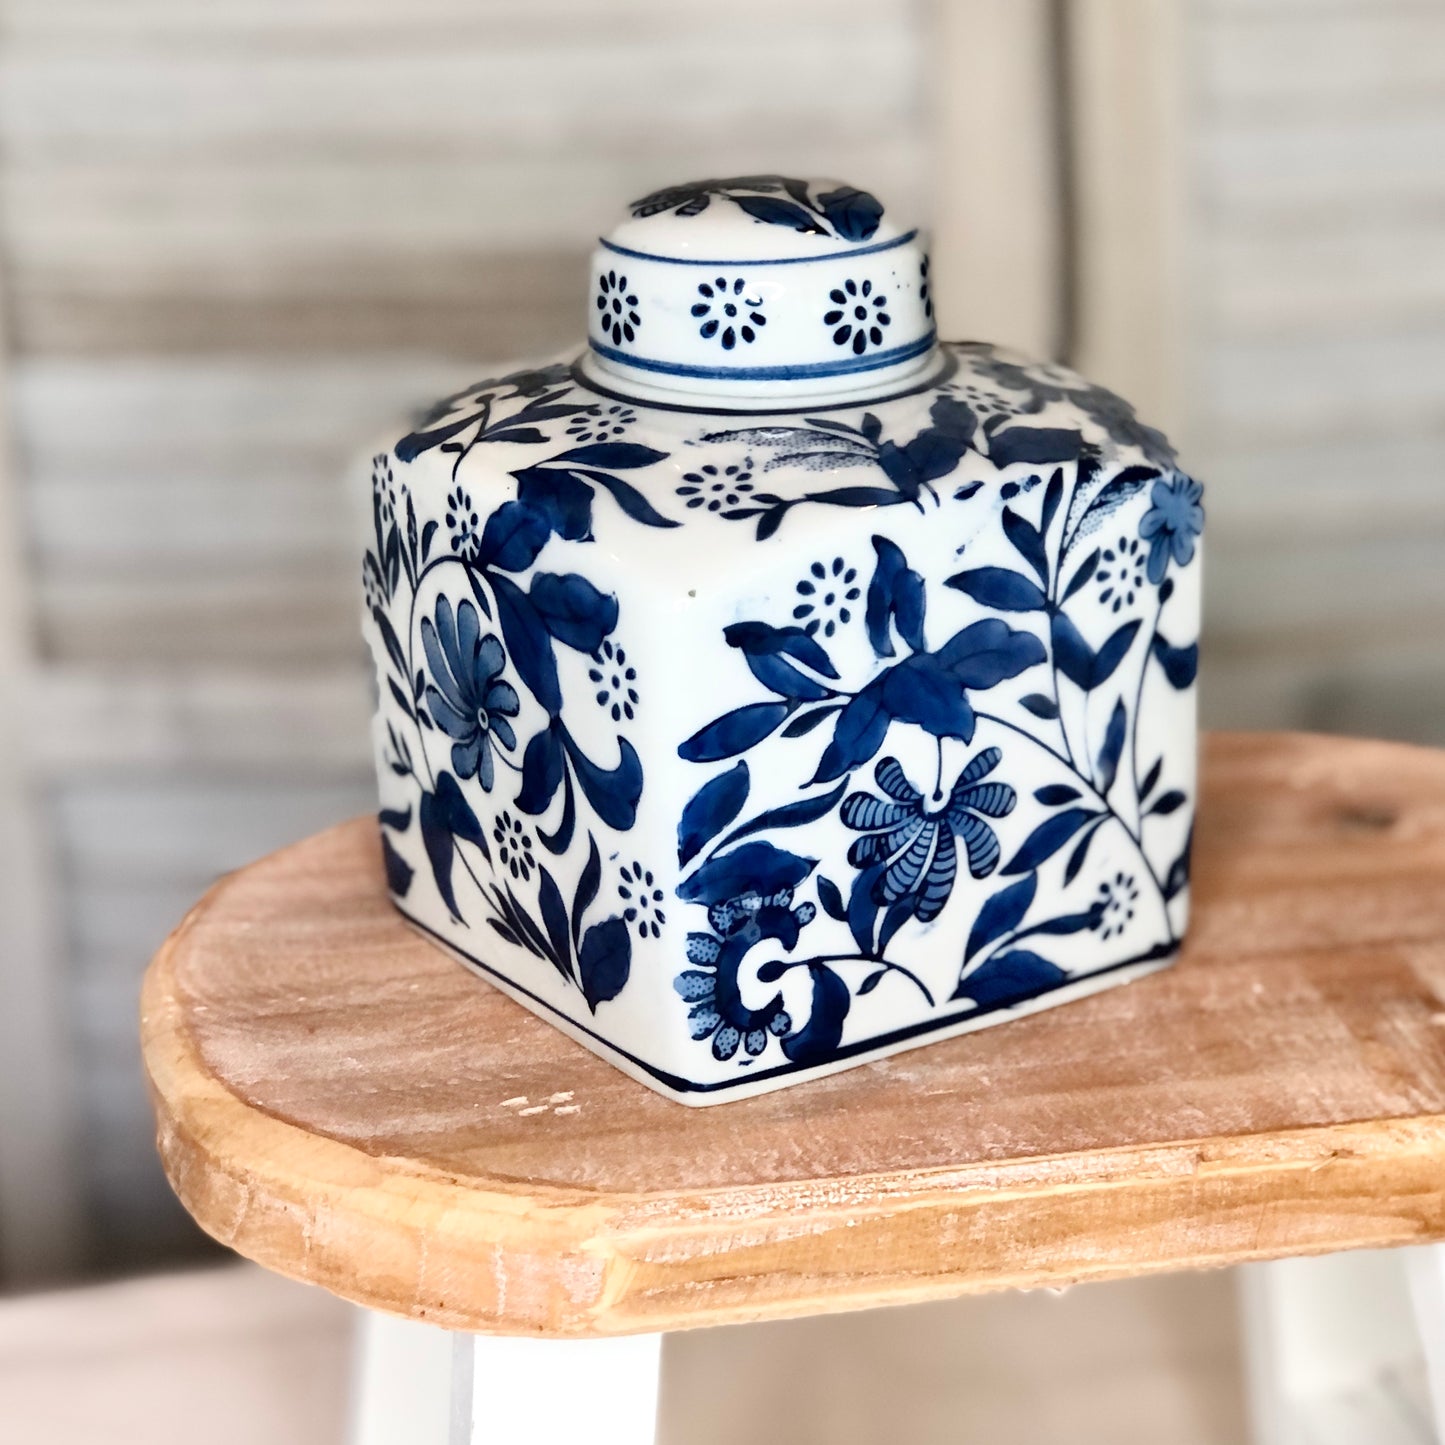 Blue + white floral ginger jar